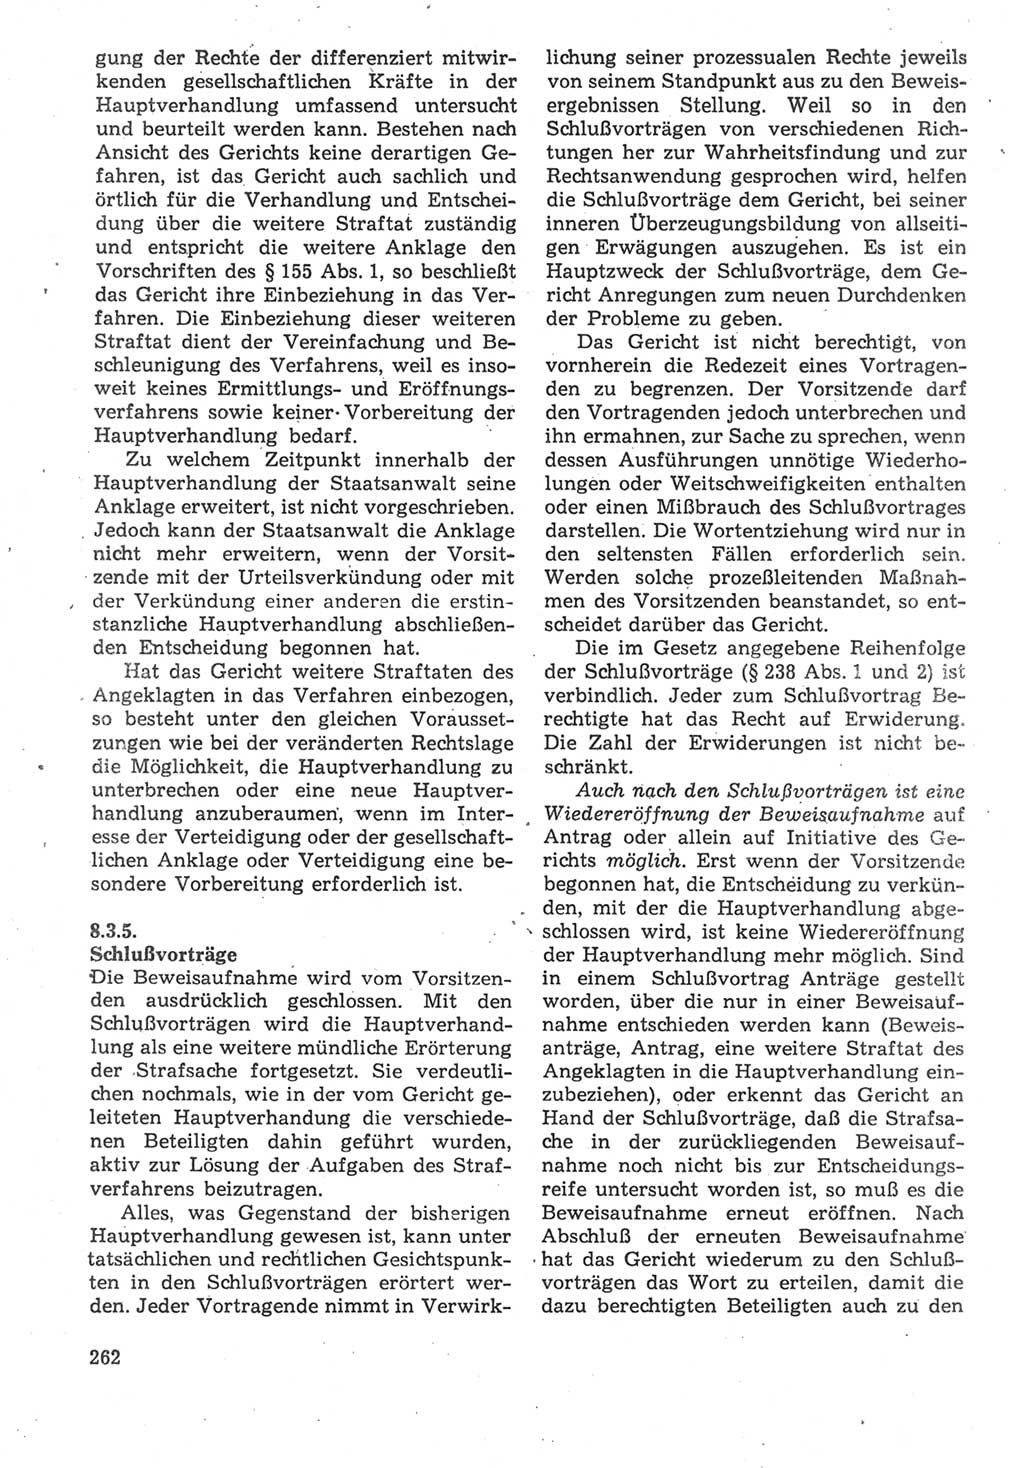 Strafverfahrensrecht [Deutsche Demokratische Republik (DDR)], Lehrbuch 1987, Seite 262 (Strafverf.-R. DDR Lb. 1987, S. 262)